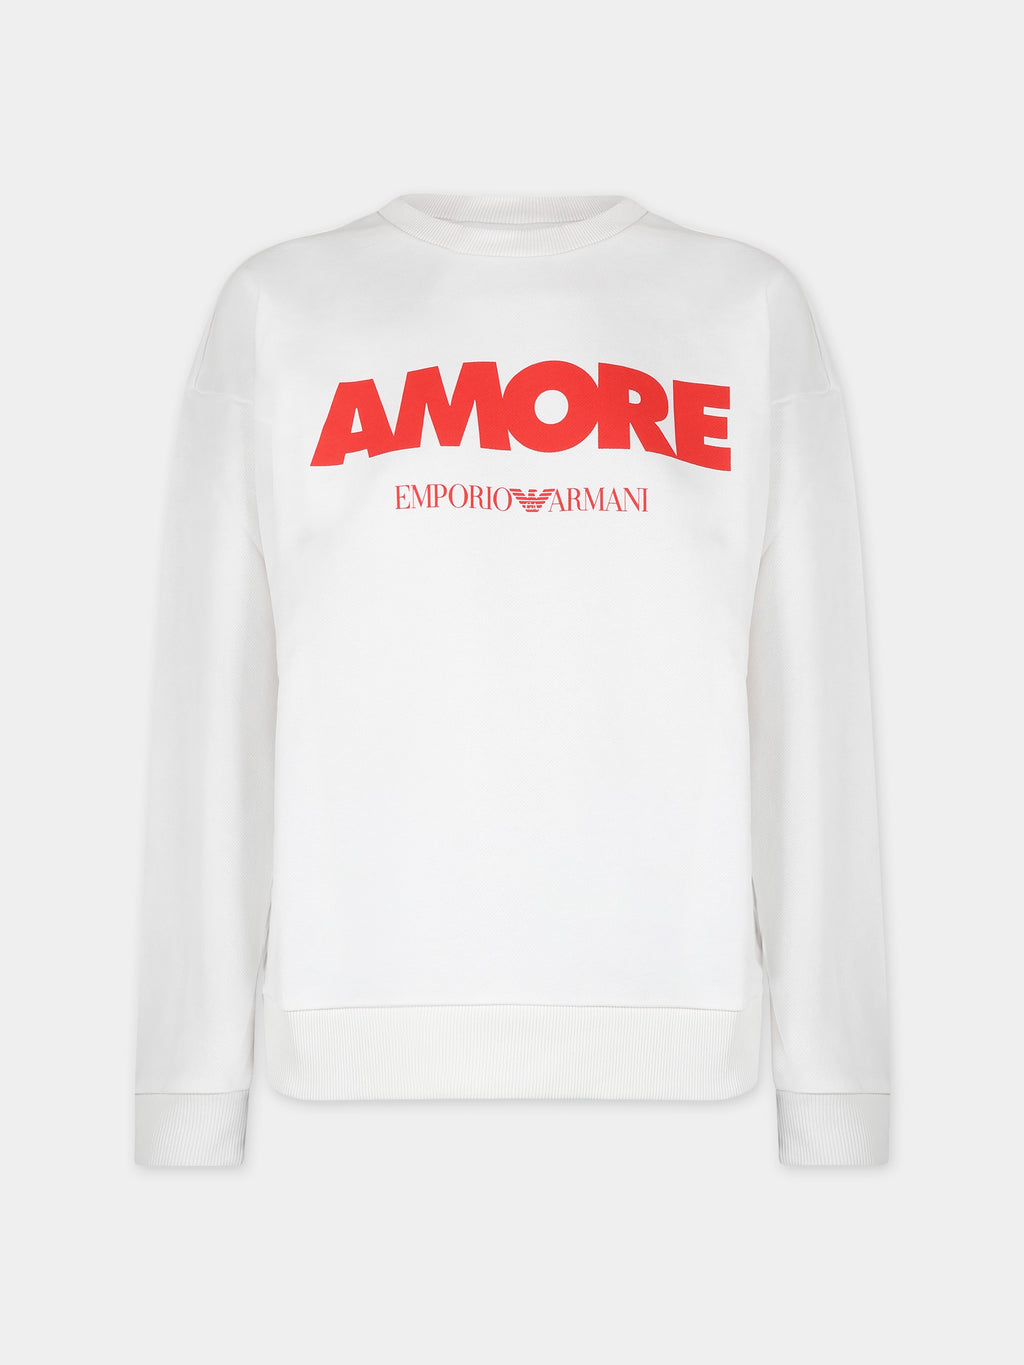 Sweat-shirt ivoire pour femme avec écriture Amore